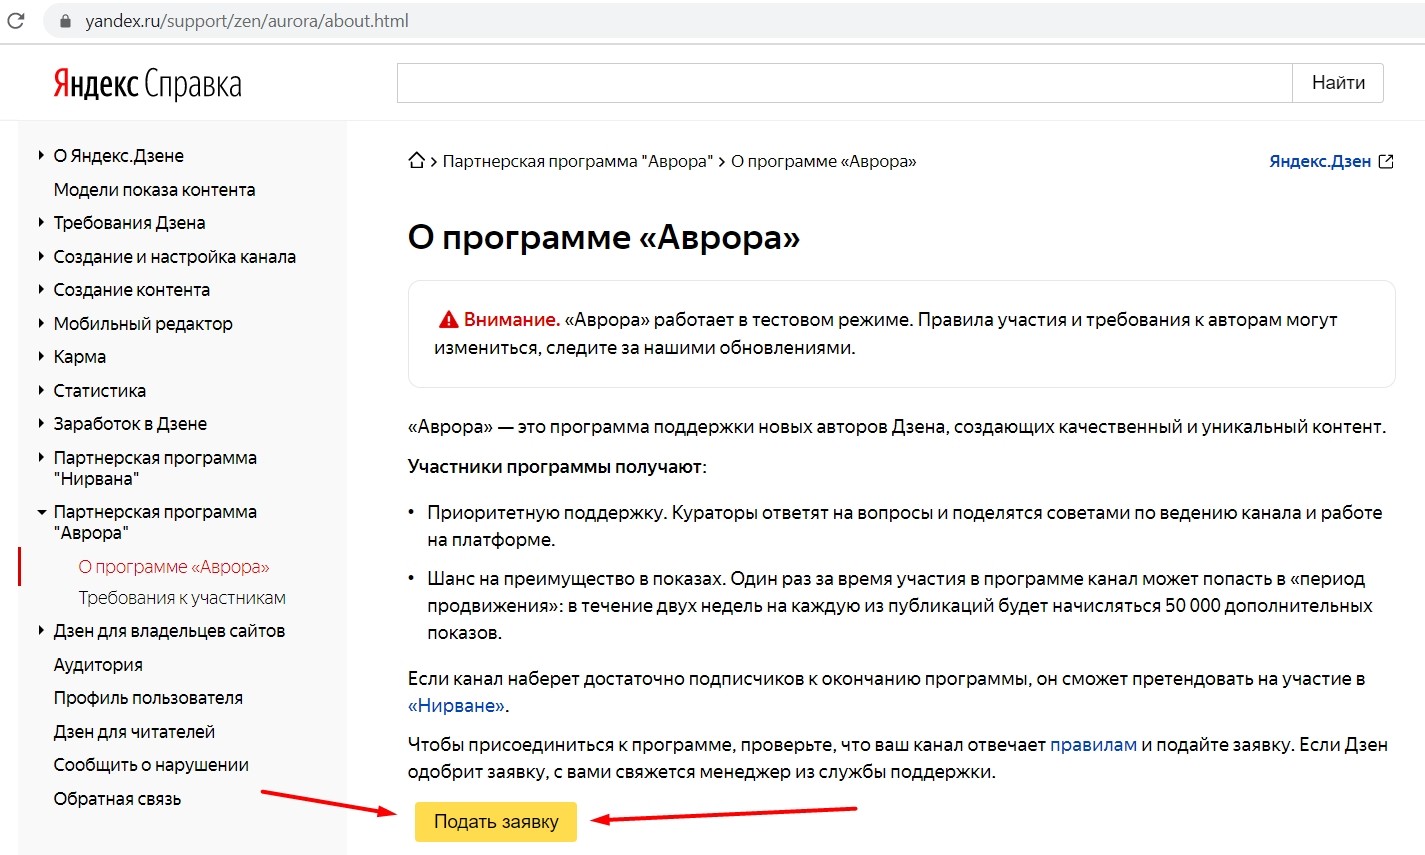 Как подать заявку в программу Аврора Яндекс Дзен